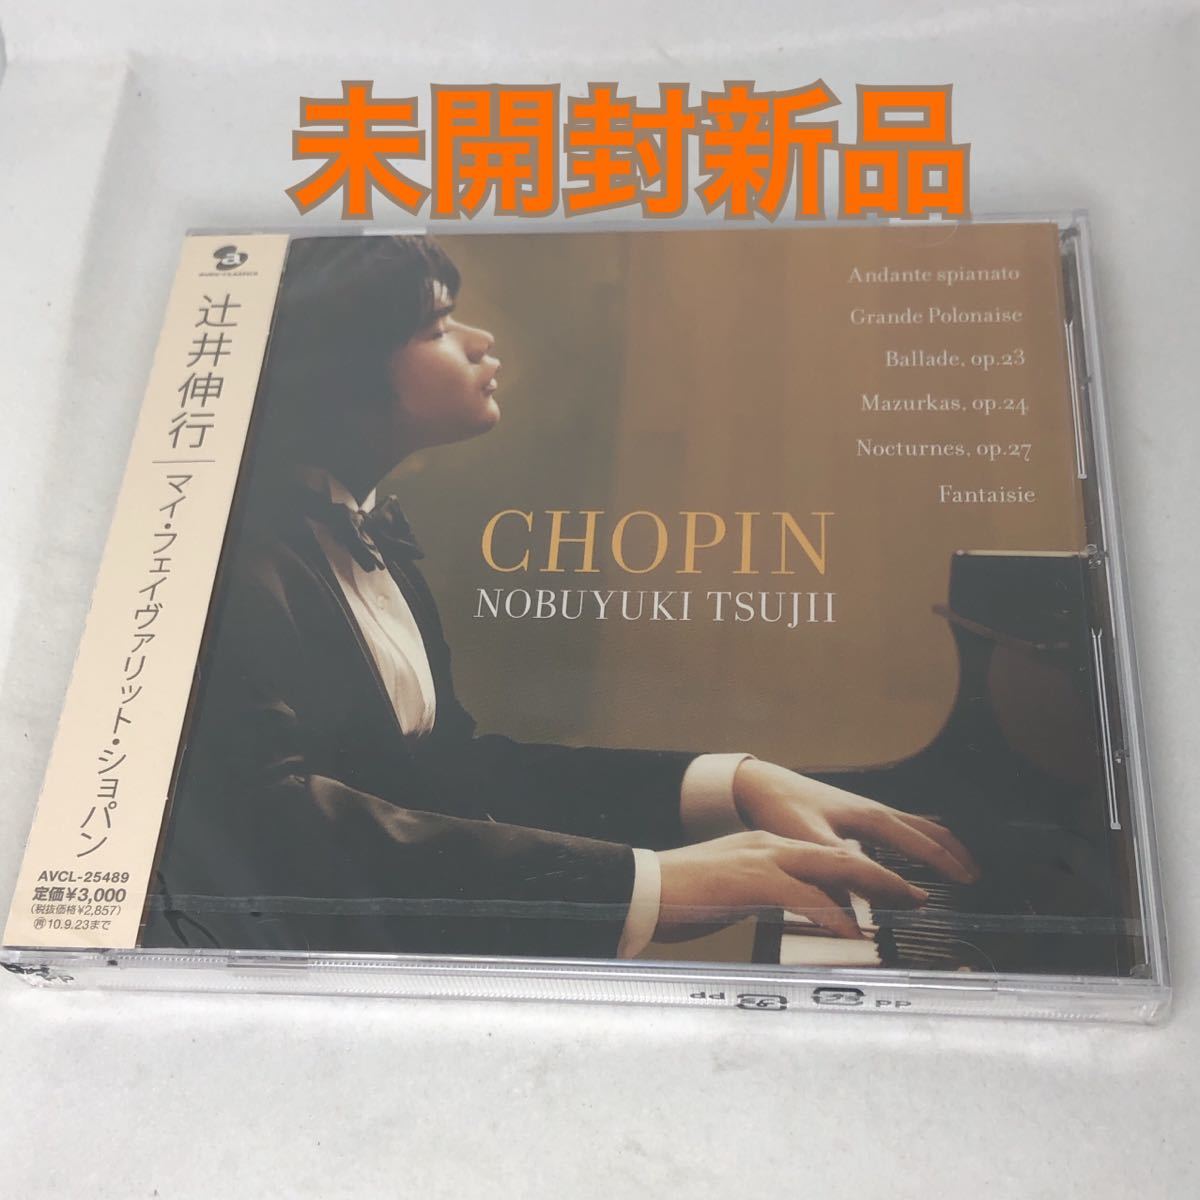 辻井伸行の世界 CD 10枚セット 01〜10巻 クラシック ピアノ 自作集